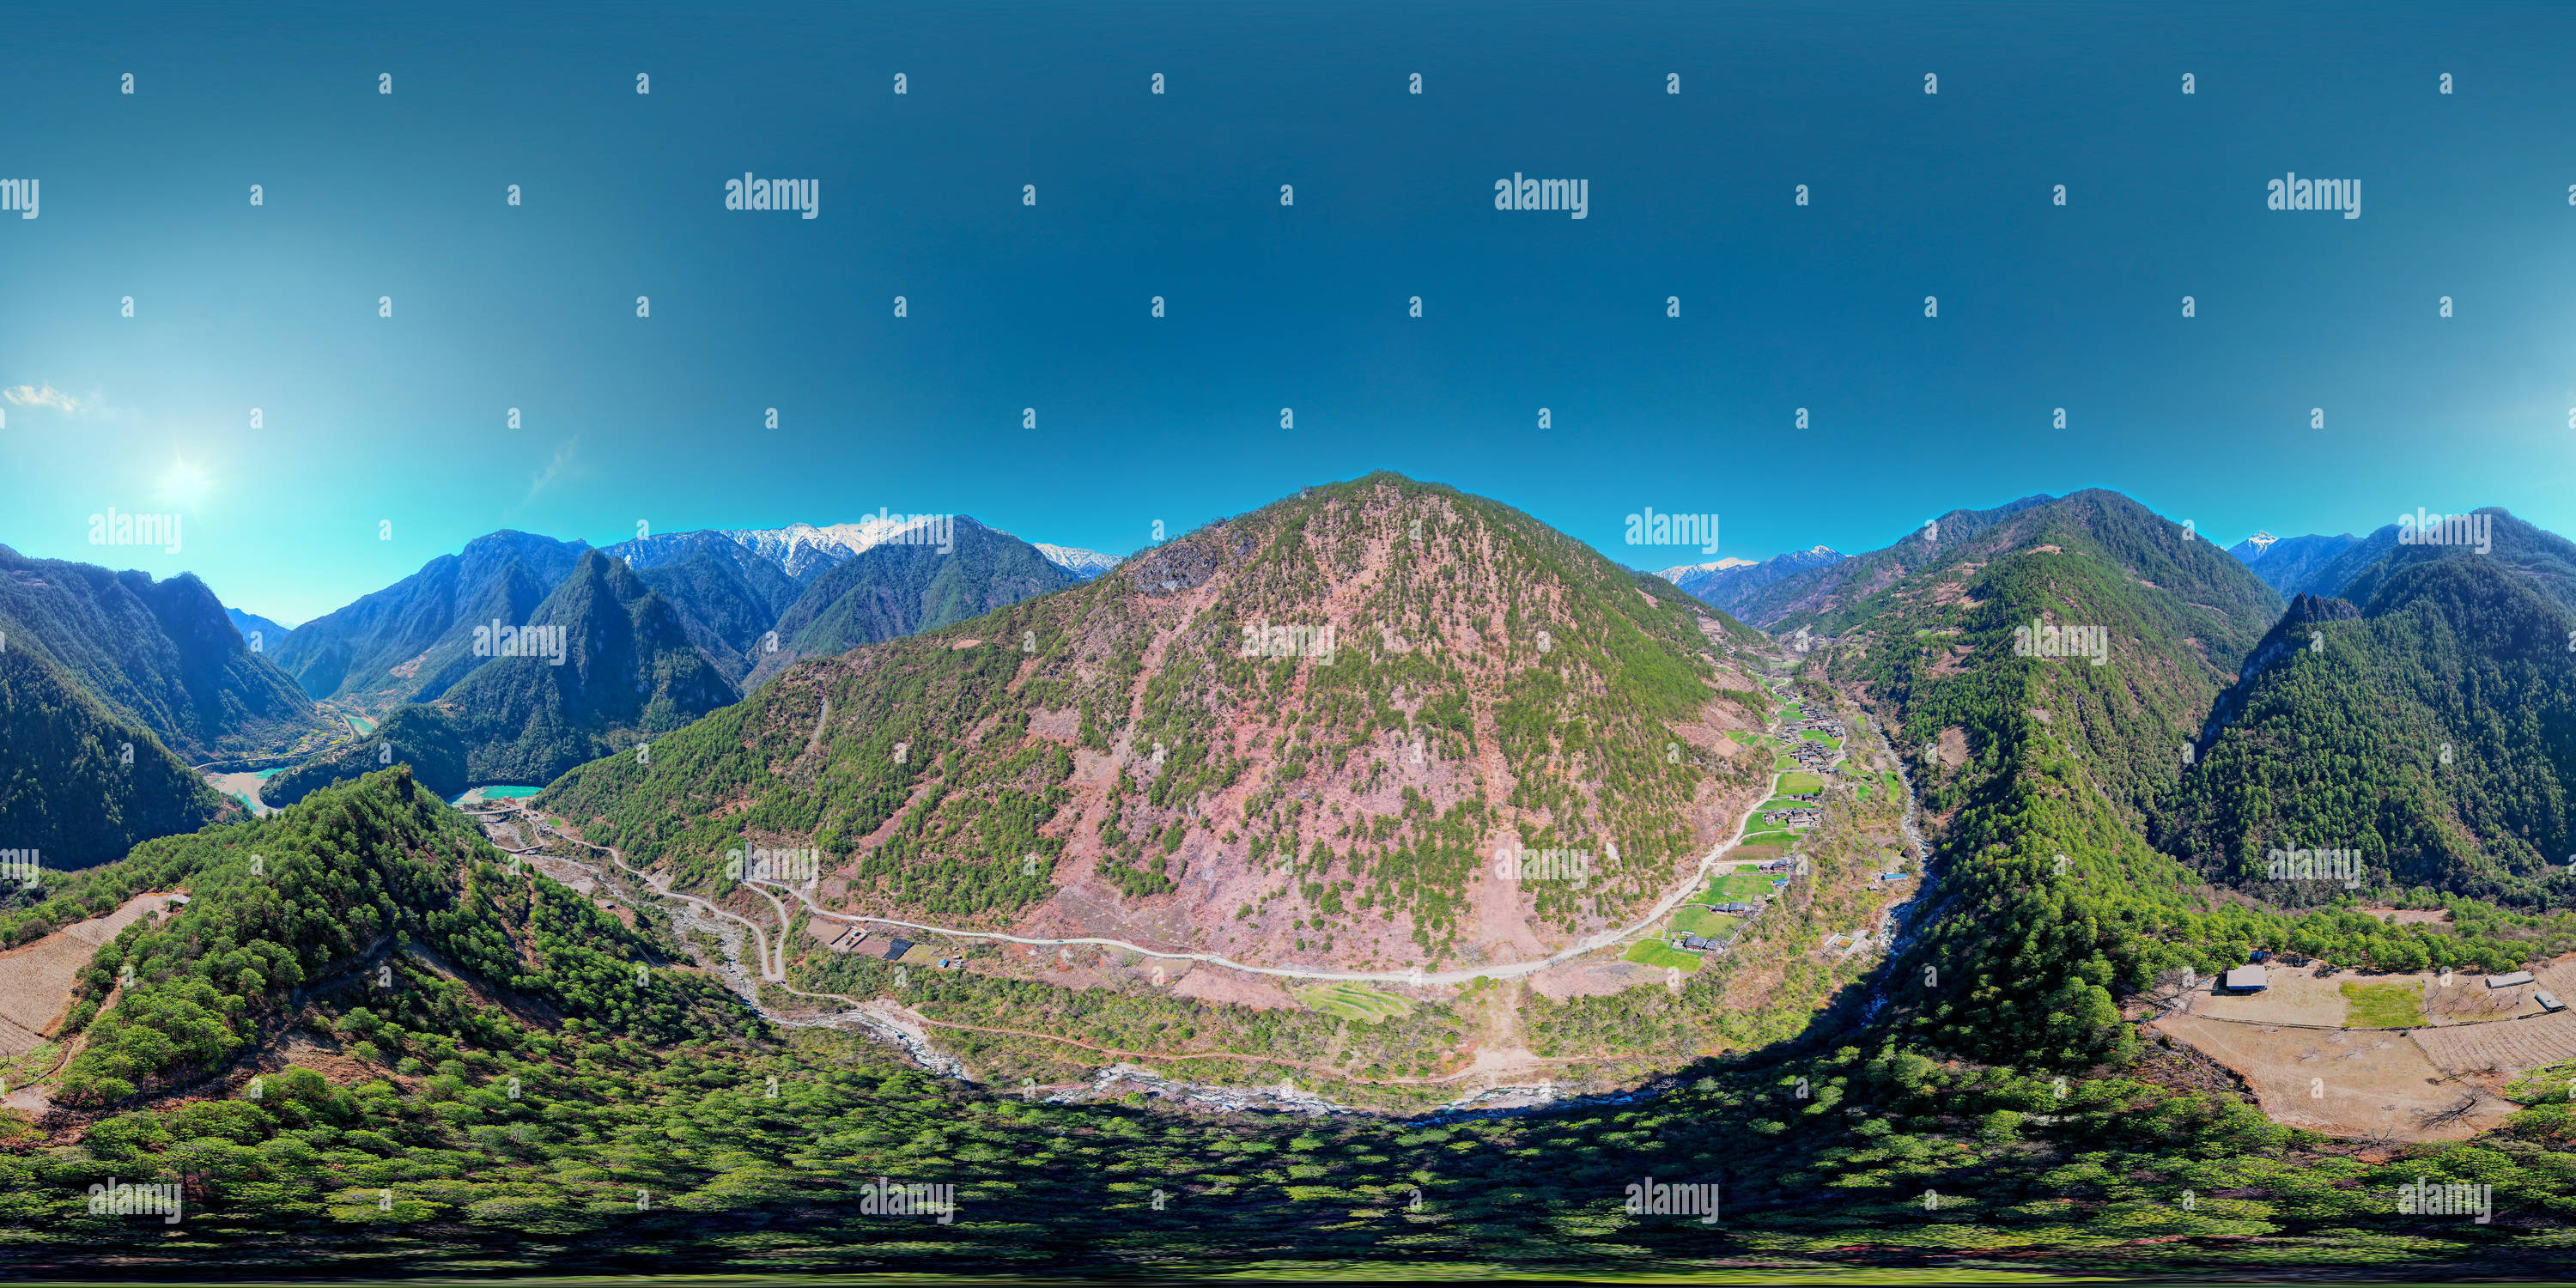 360 Grad Panorama Ansicht von Qiunatong , ein kleines Dorf, versteckt in einem ravine秋那桶，藏在深谷里的小村落